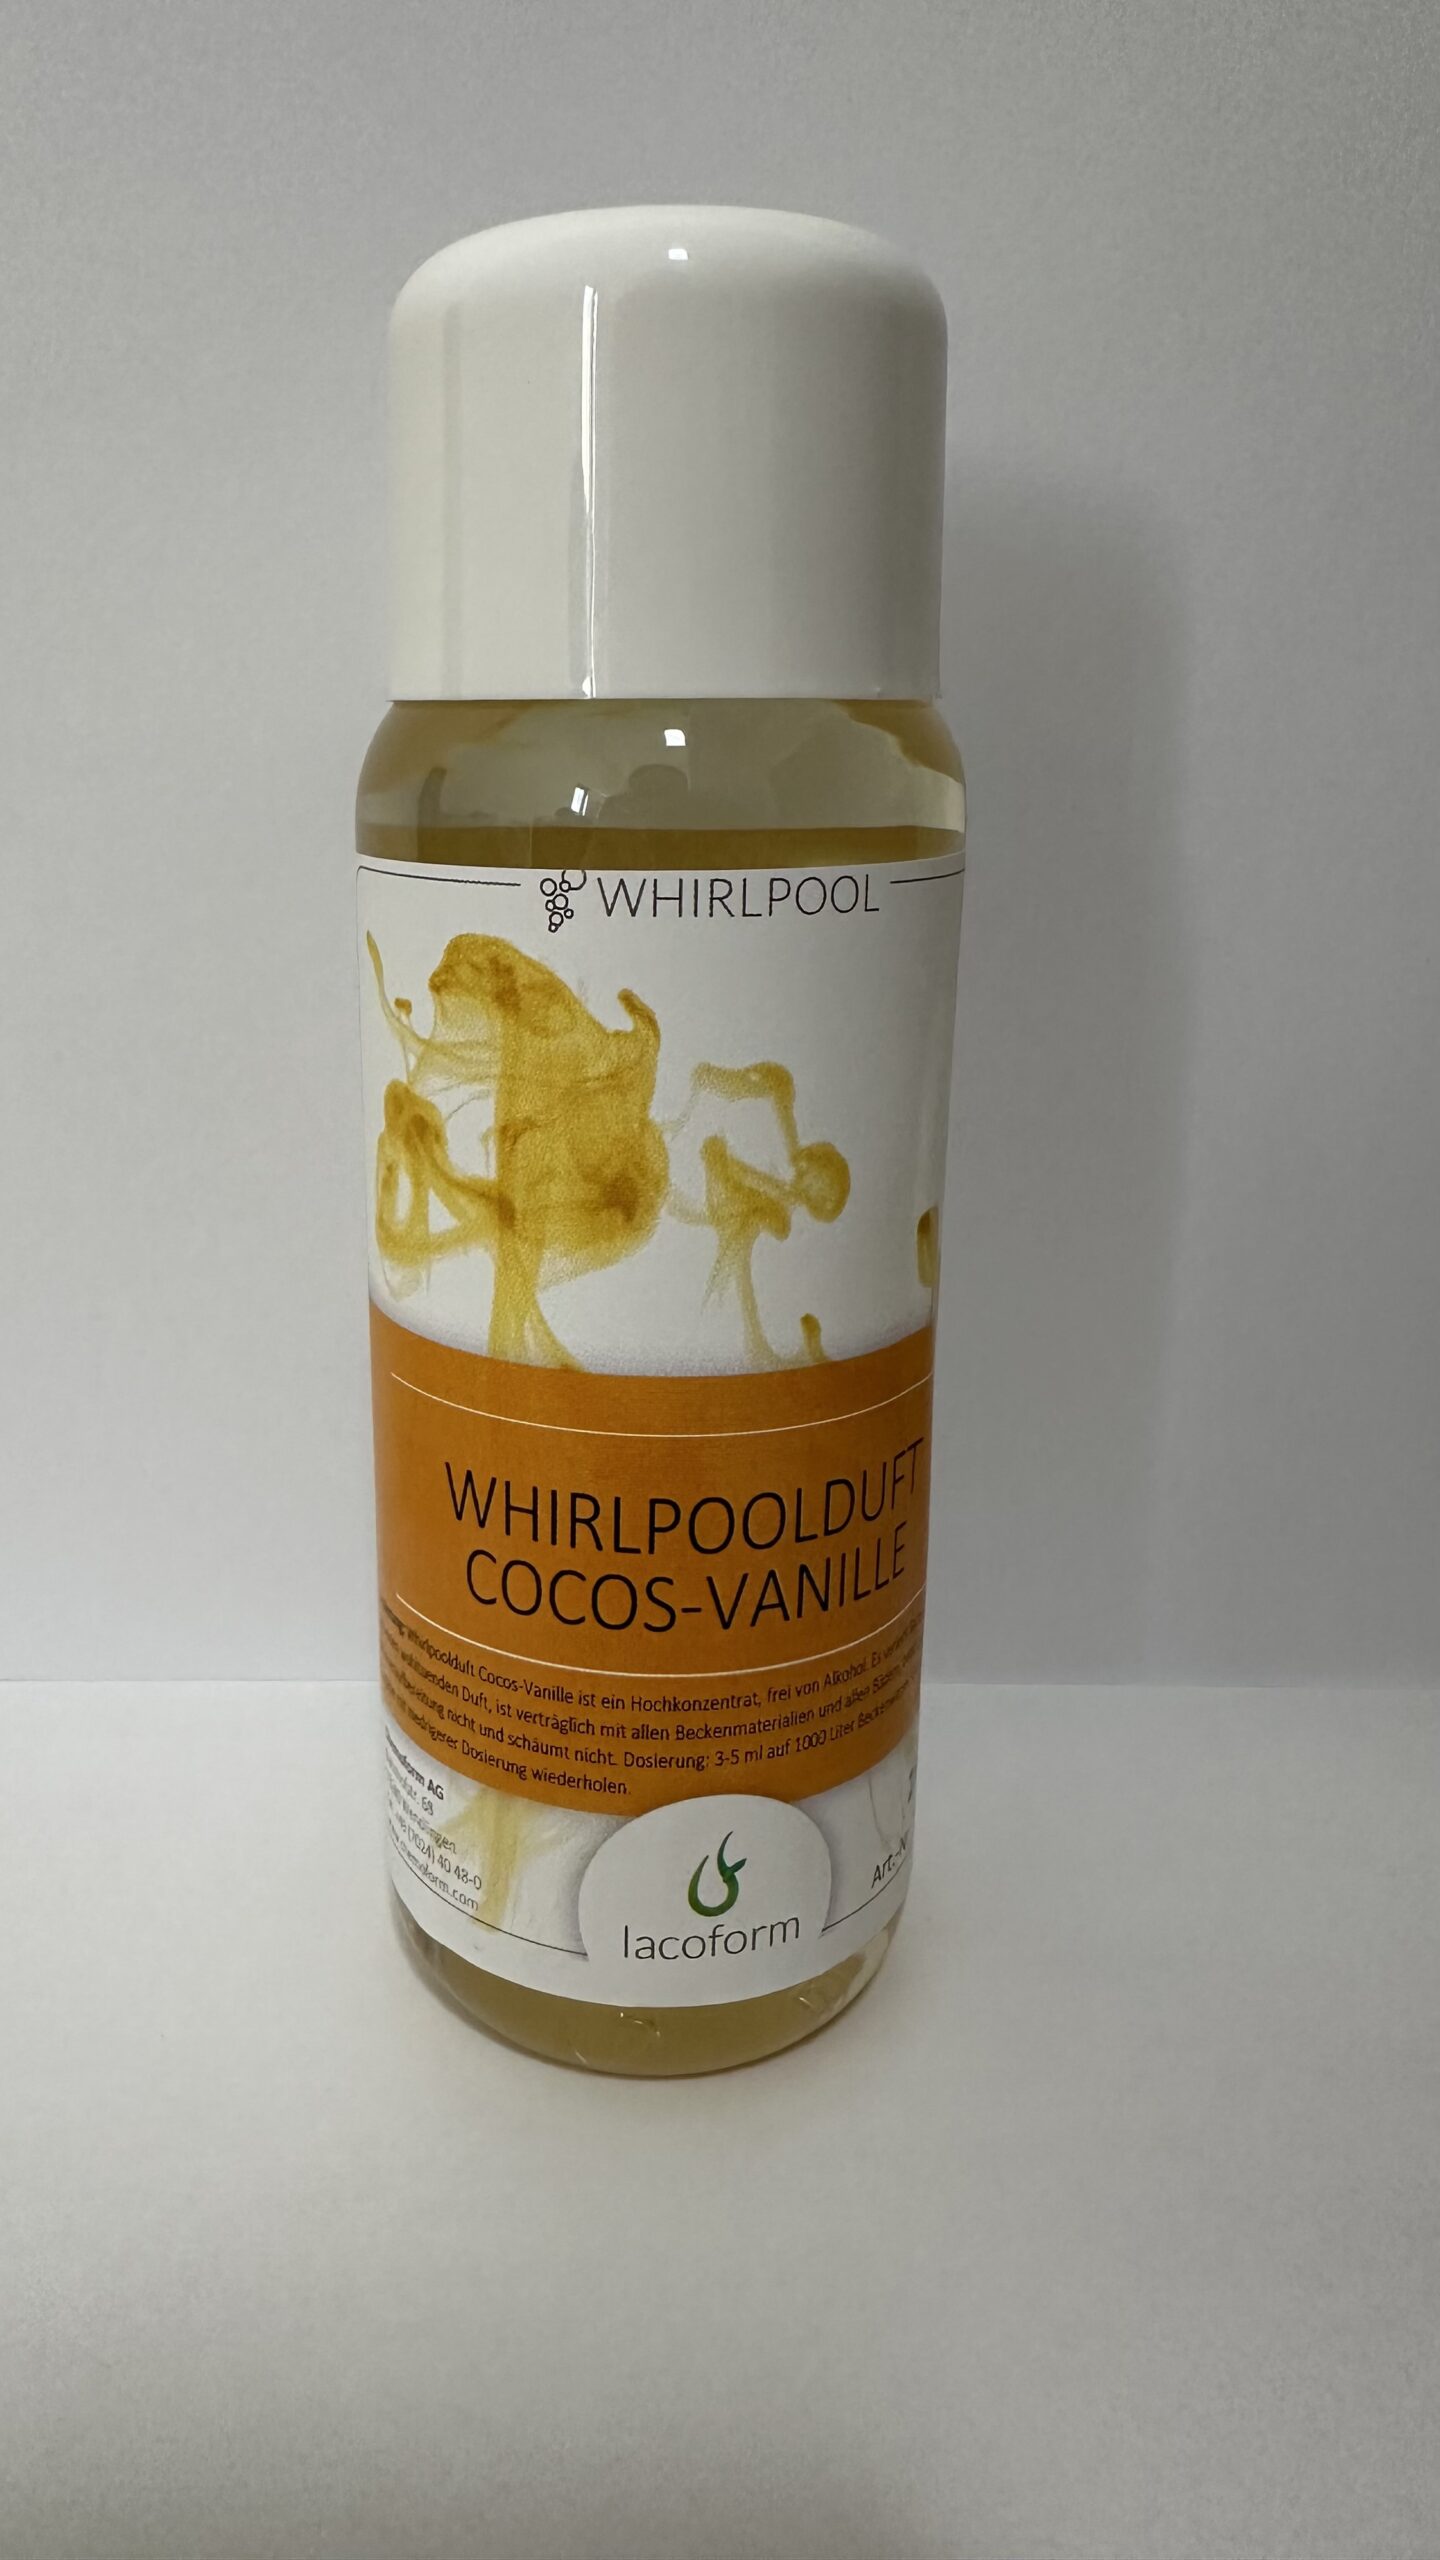 LACOFORM VANNIAROOM COCOS - VANILLI 250 ml